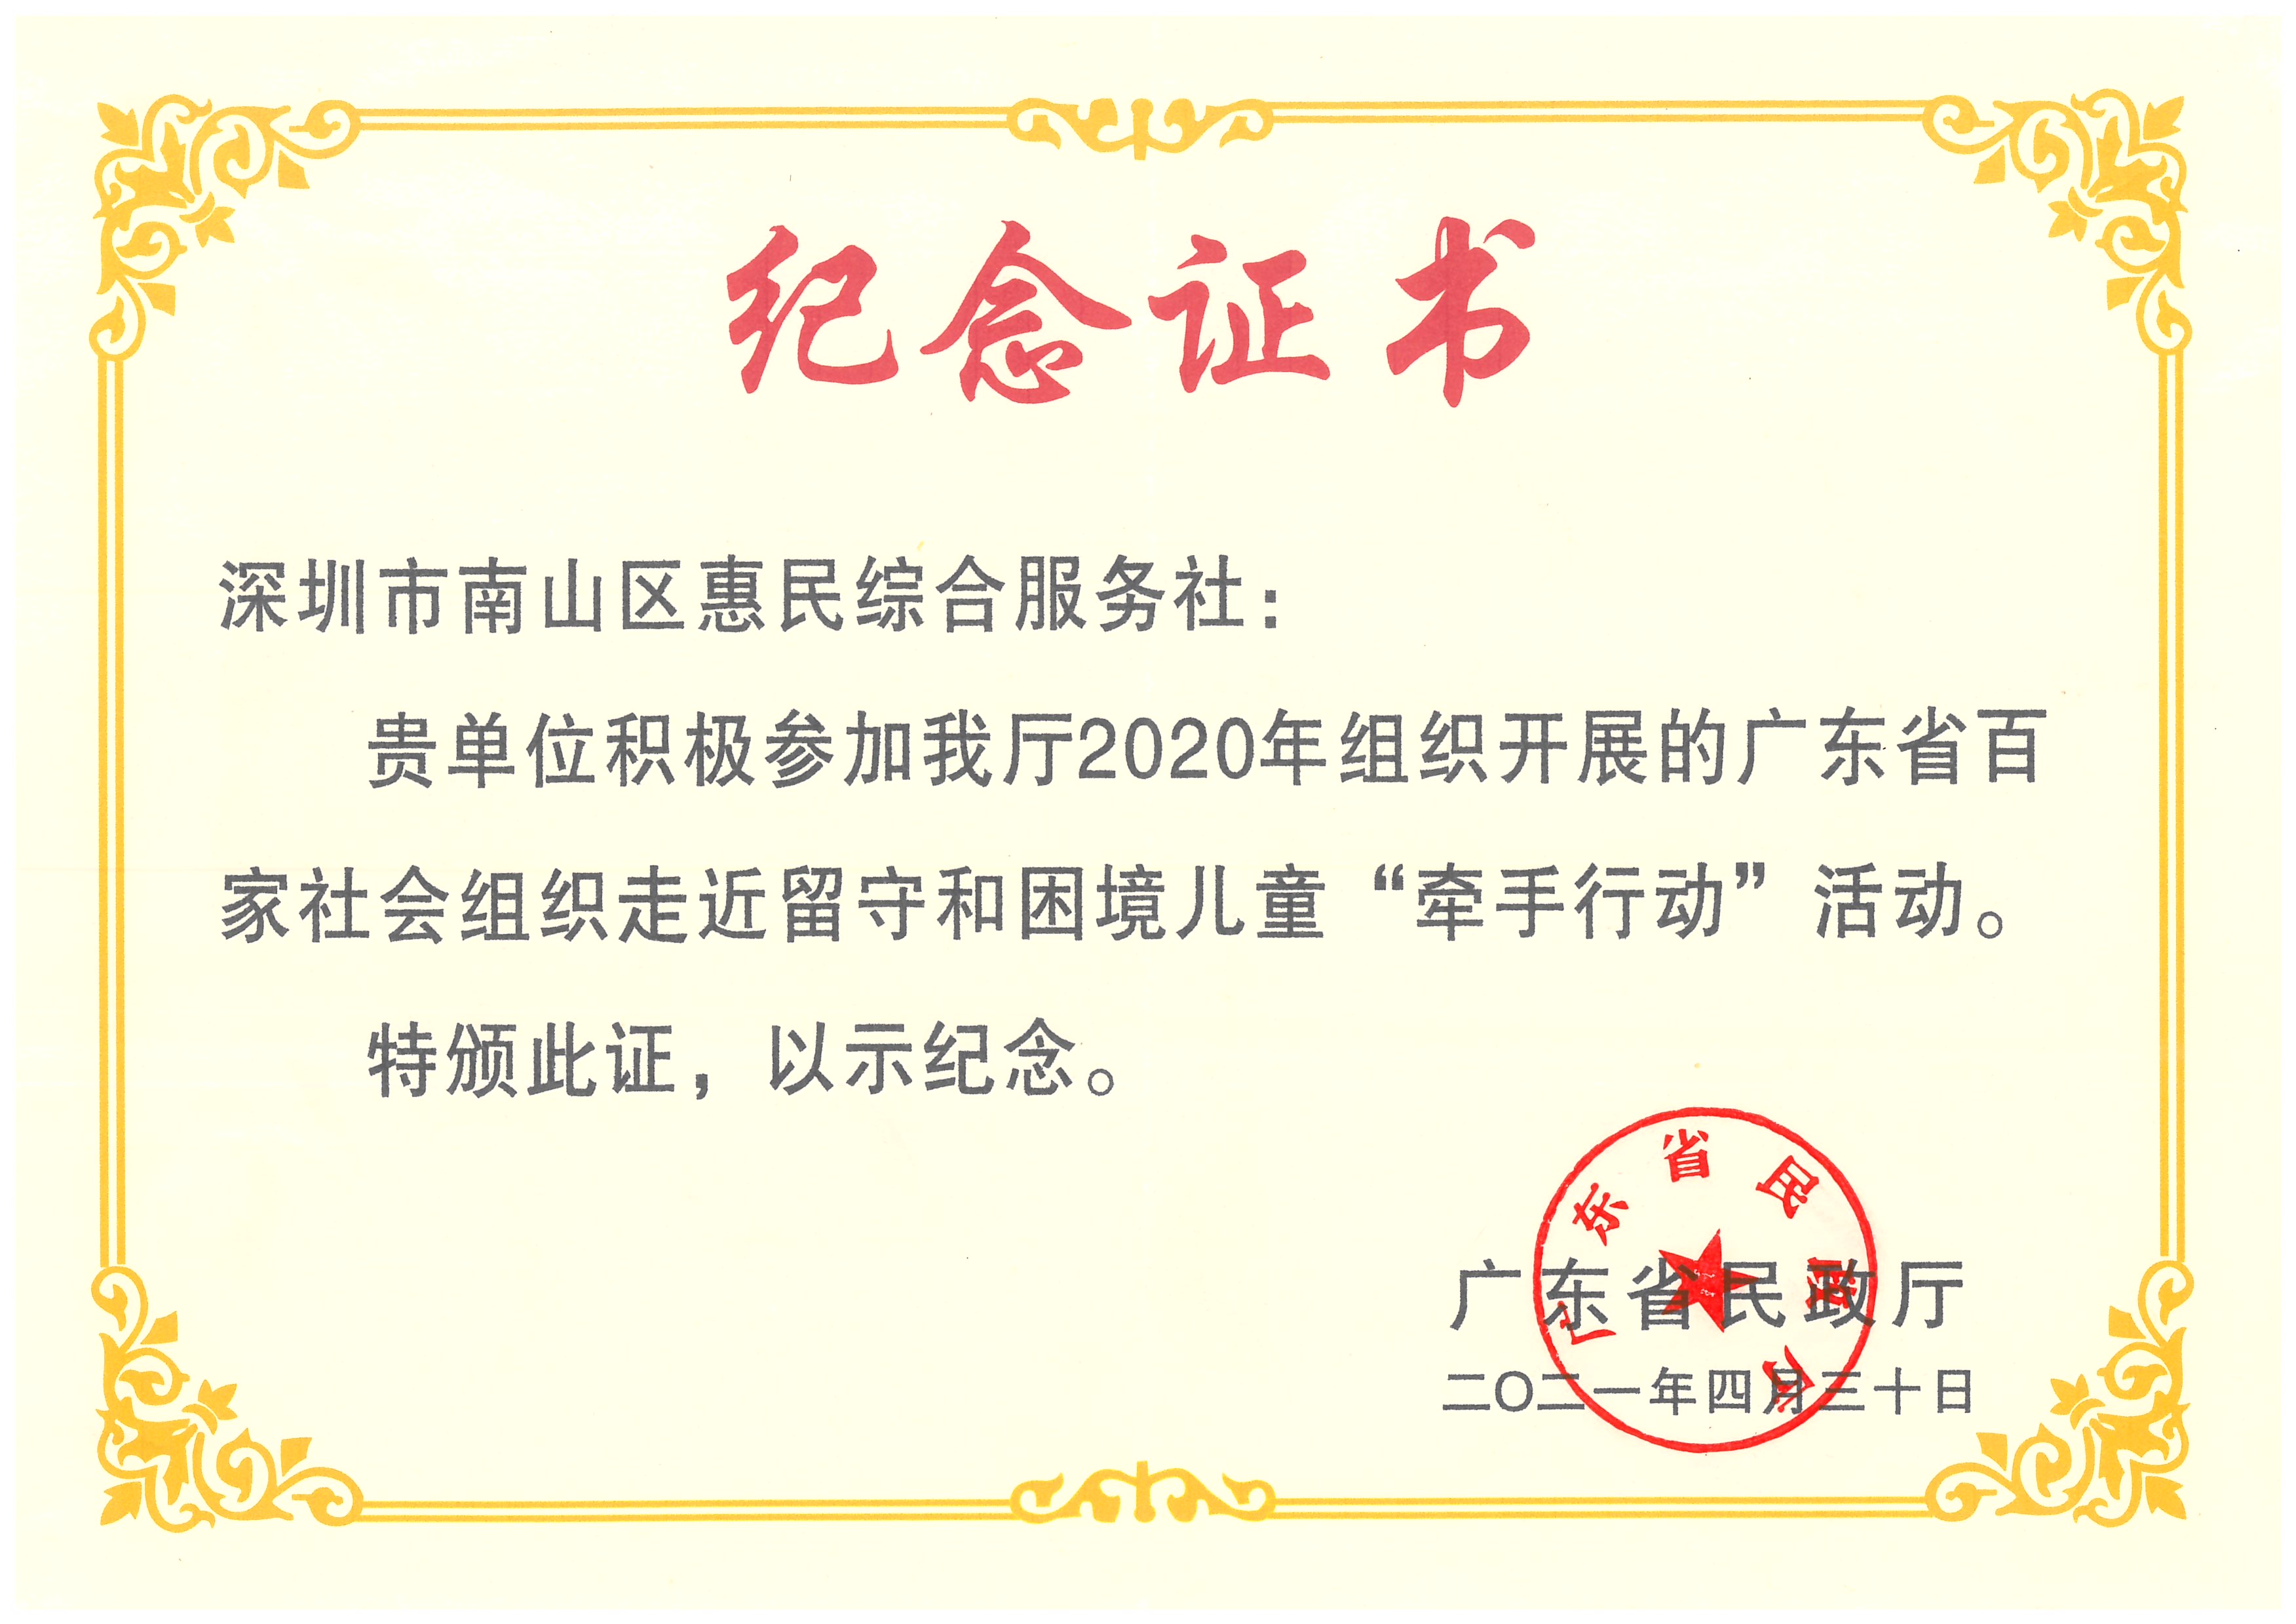 2020年广东省百家社会组织走近留守和困境儿童“牵手行动”活动纪念证书